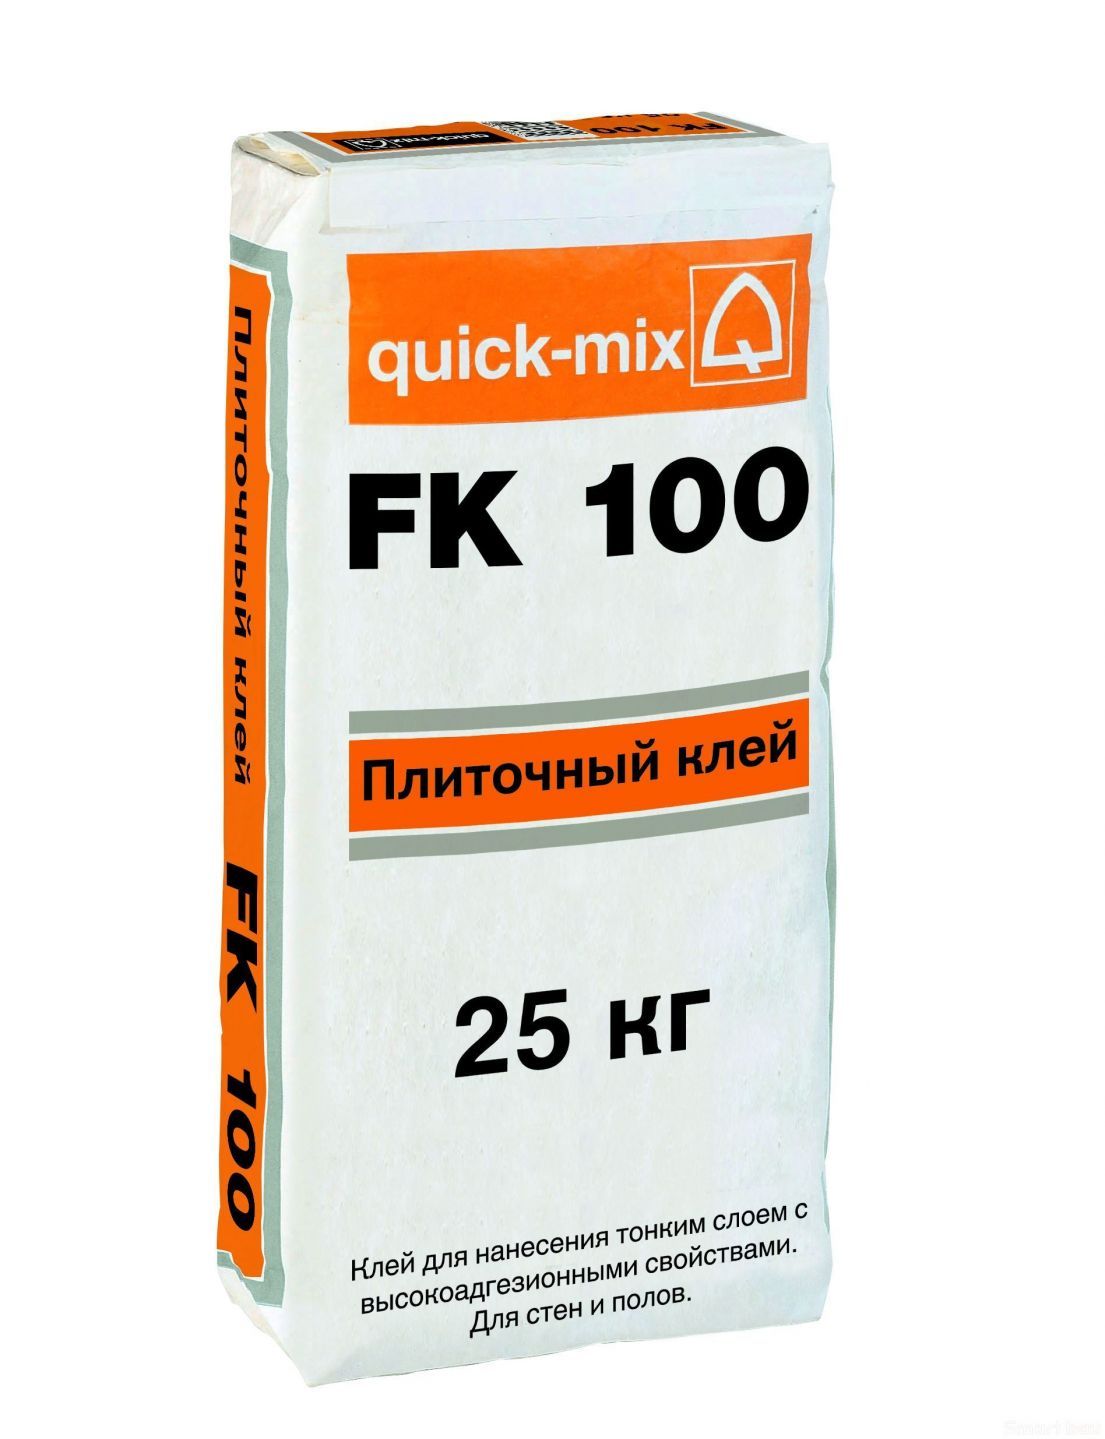 Плиточный клей quick-mix FK 100